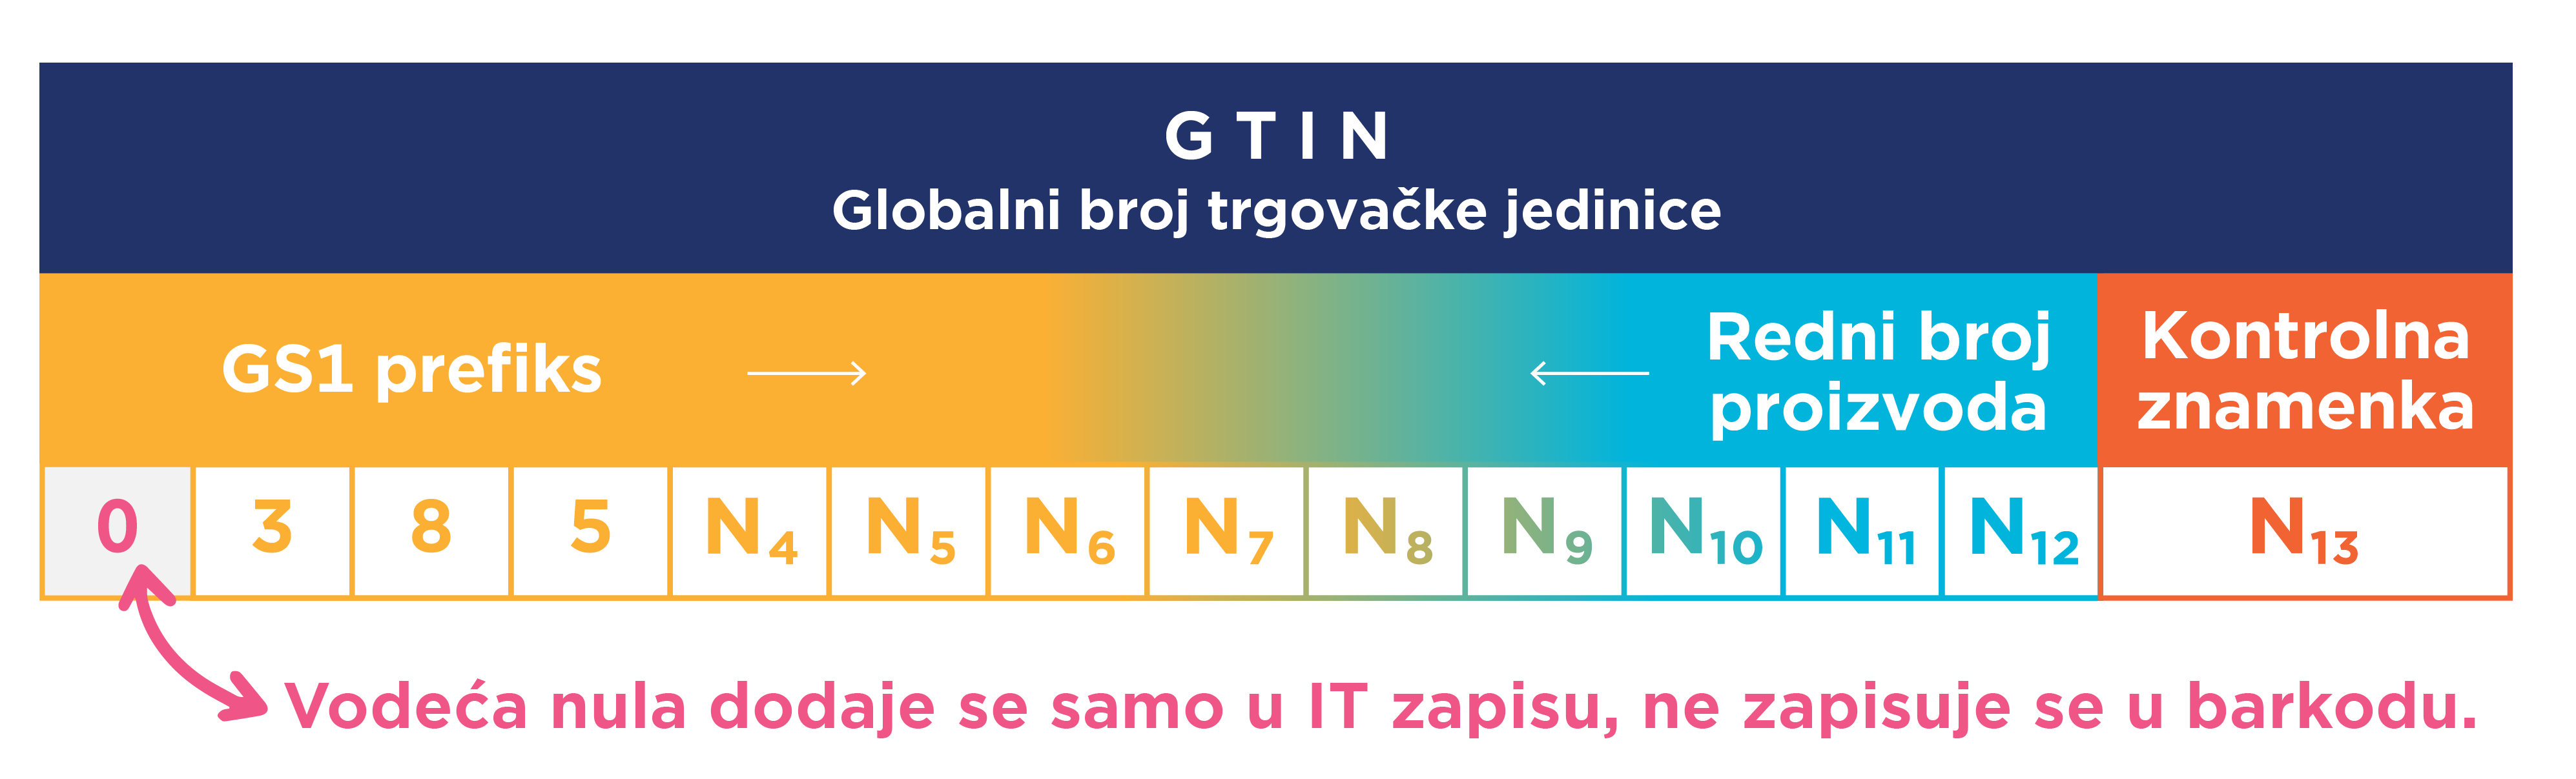 Struktura GTIN-a-02.png